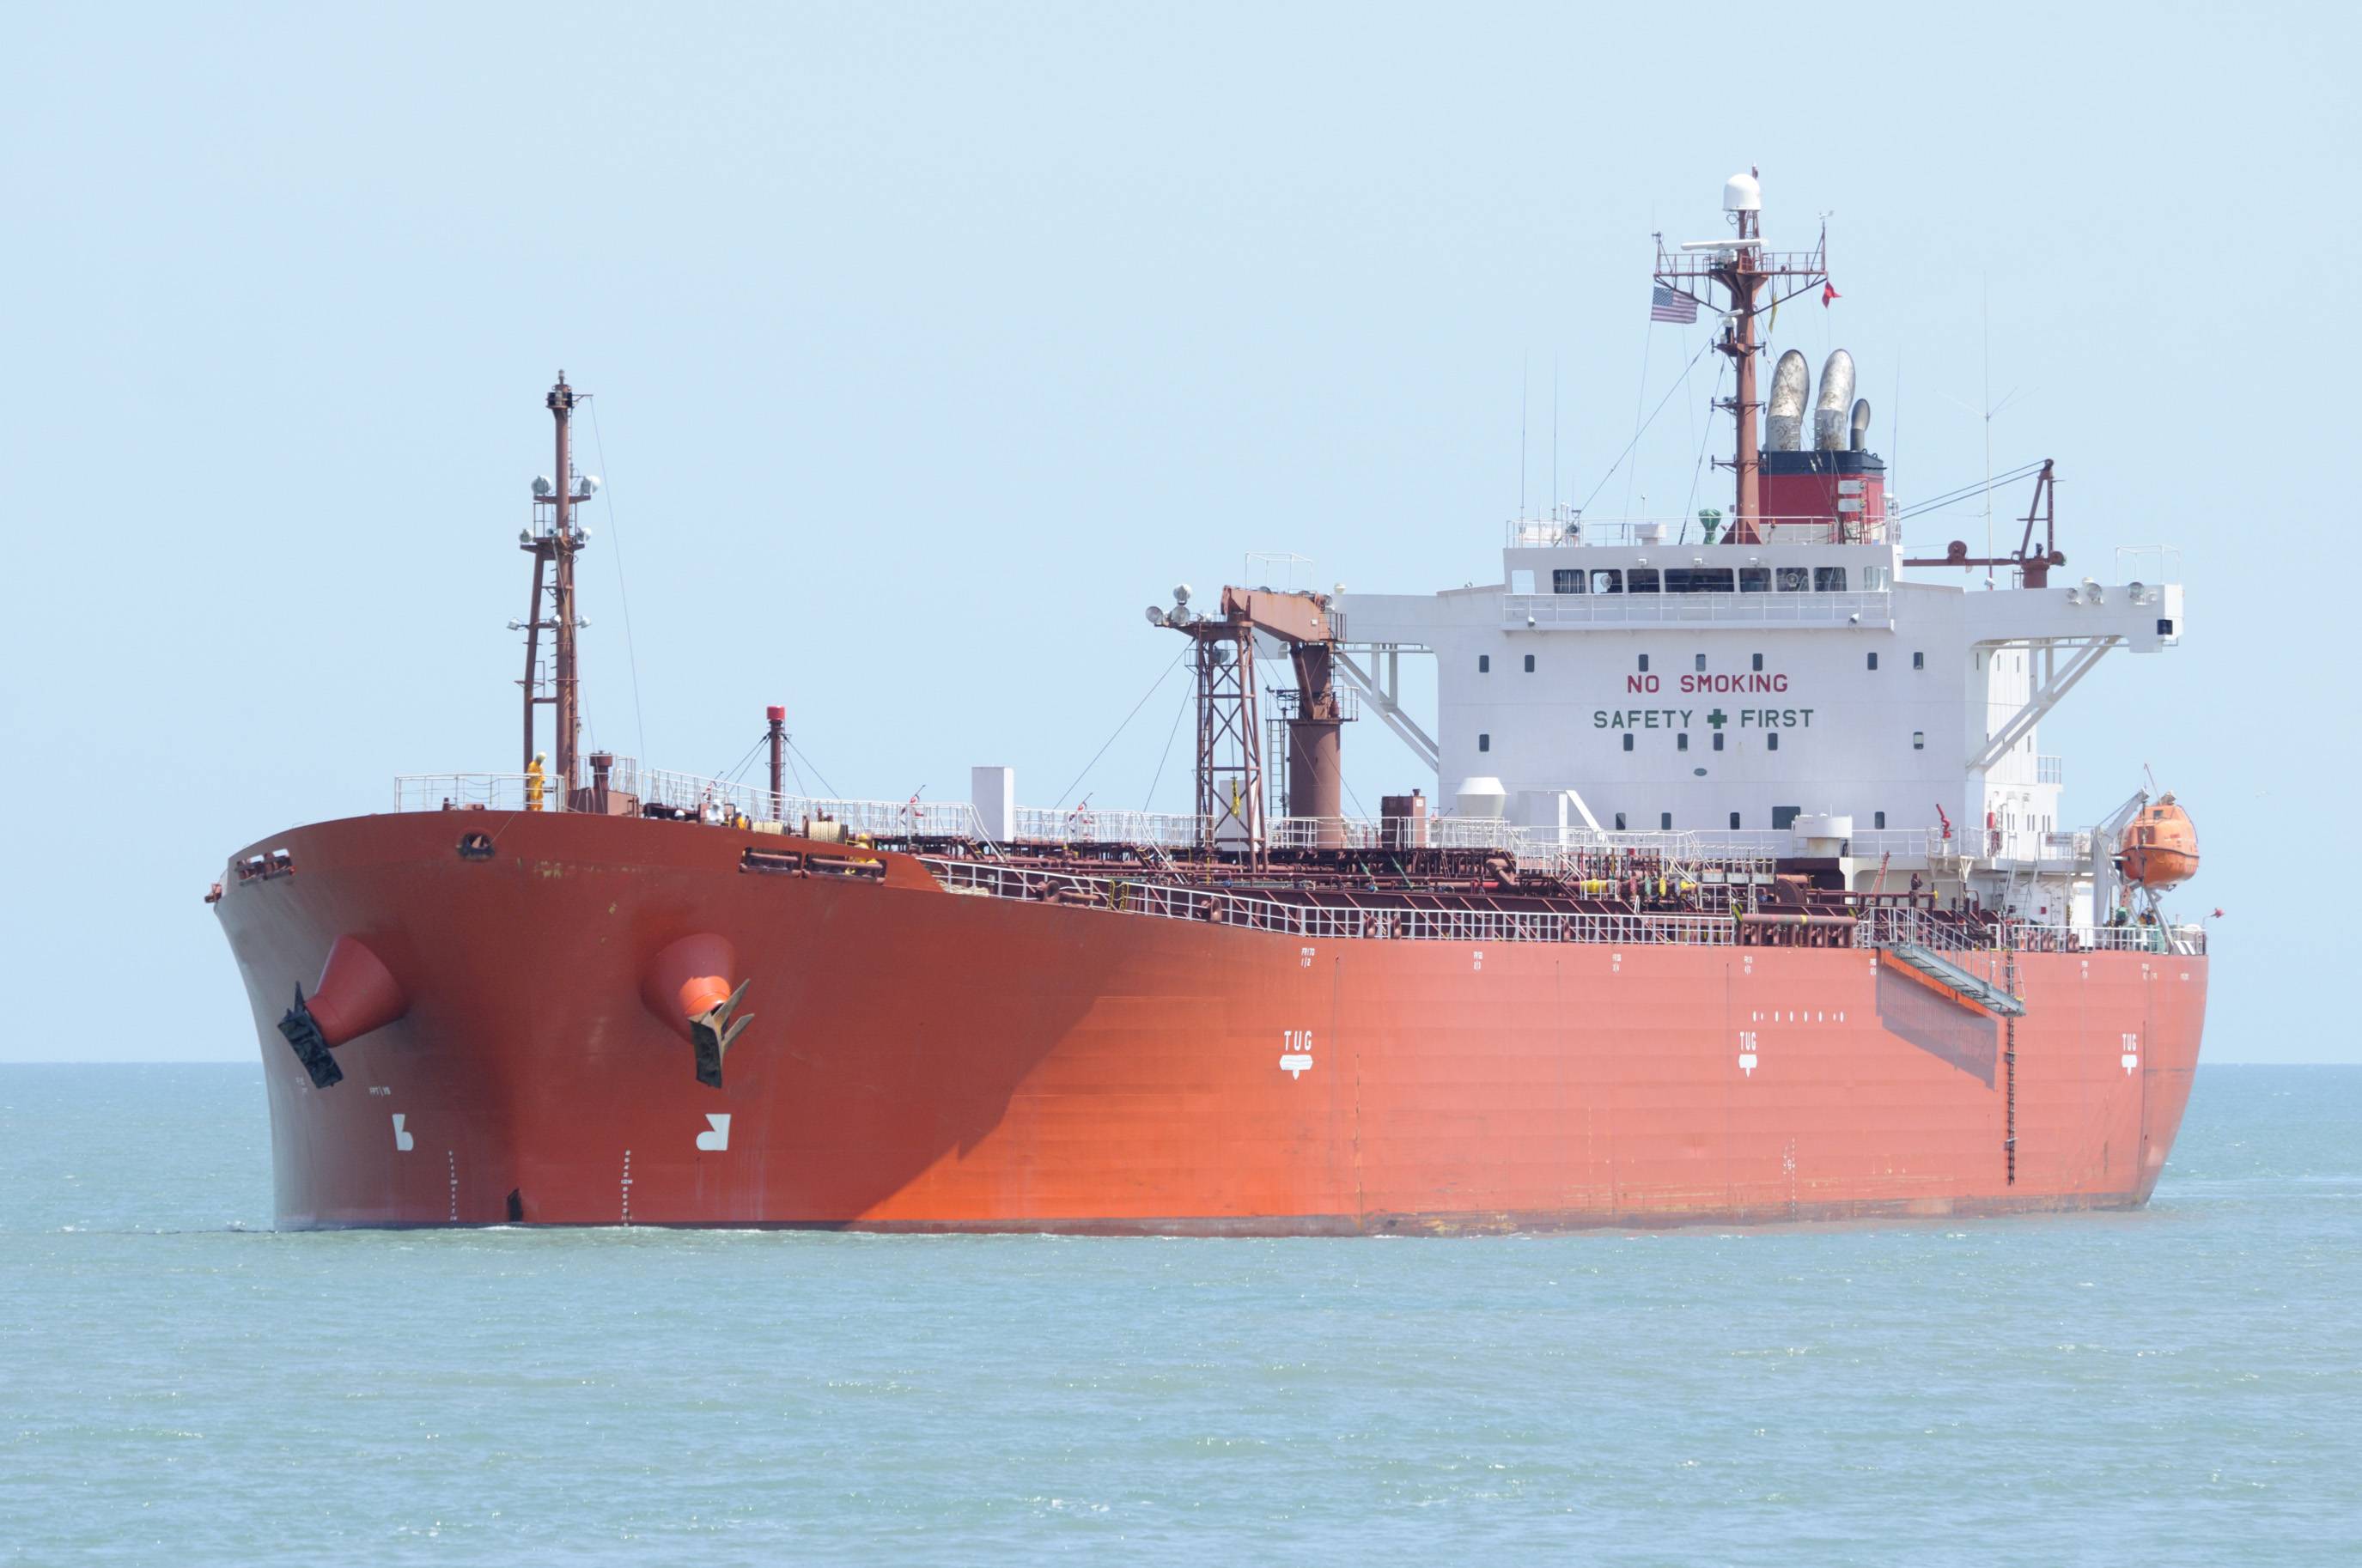 Somalia Pirates Hijack Greek Oil Tanker